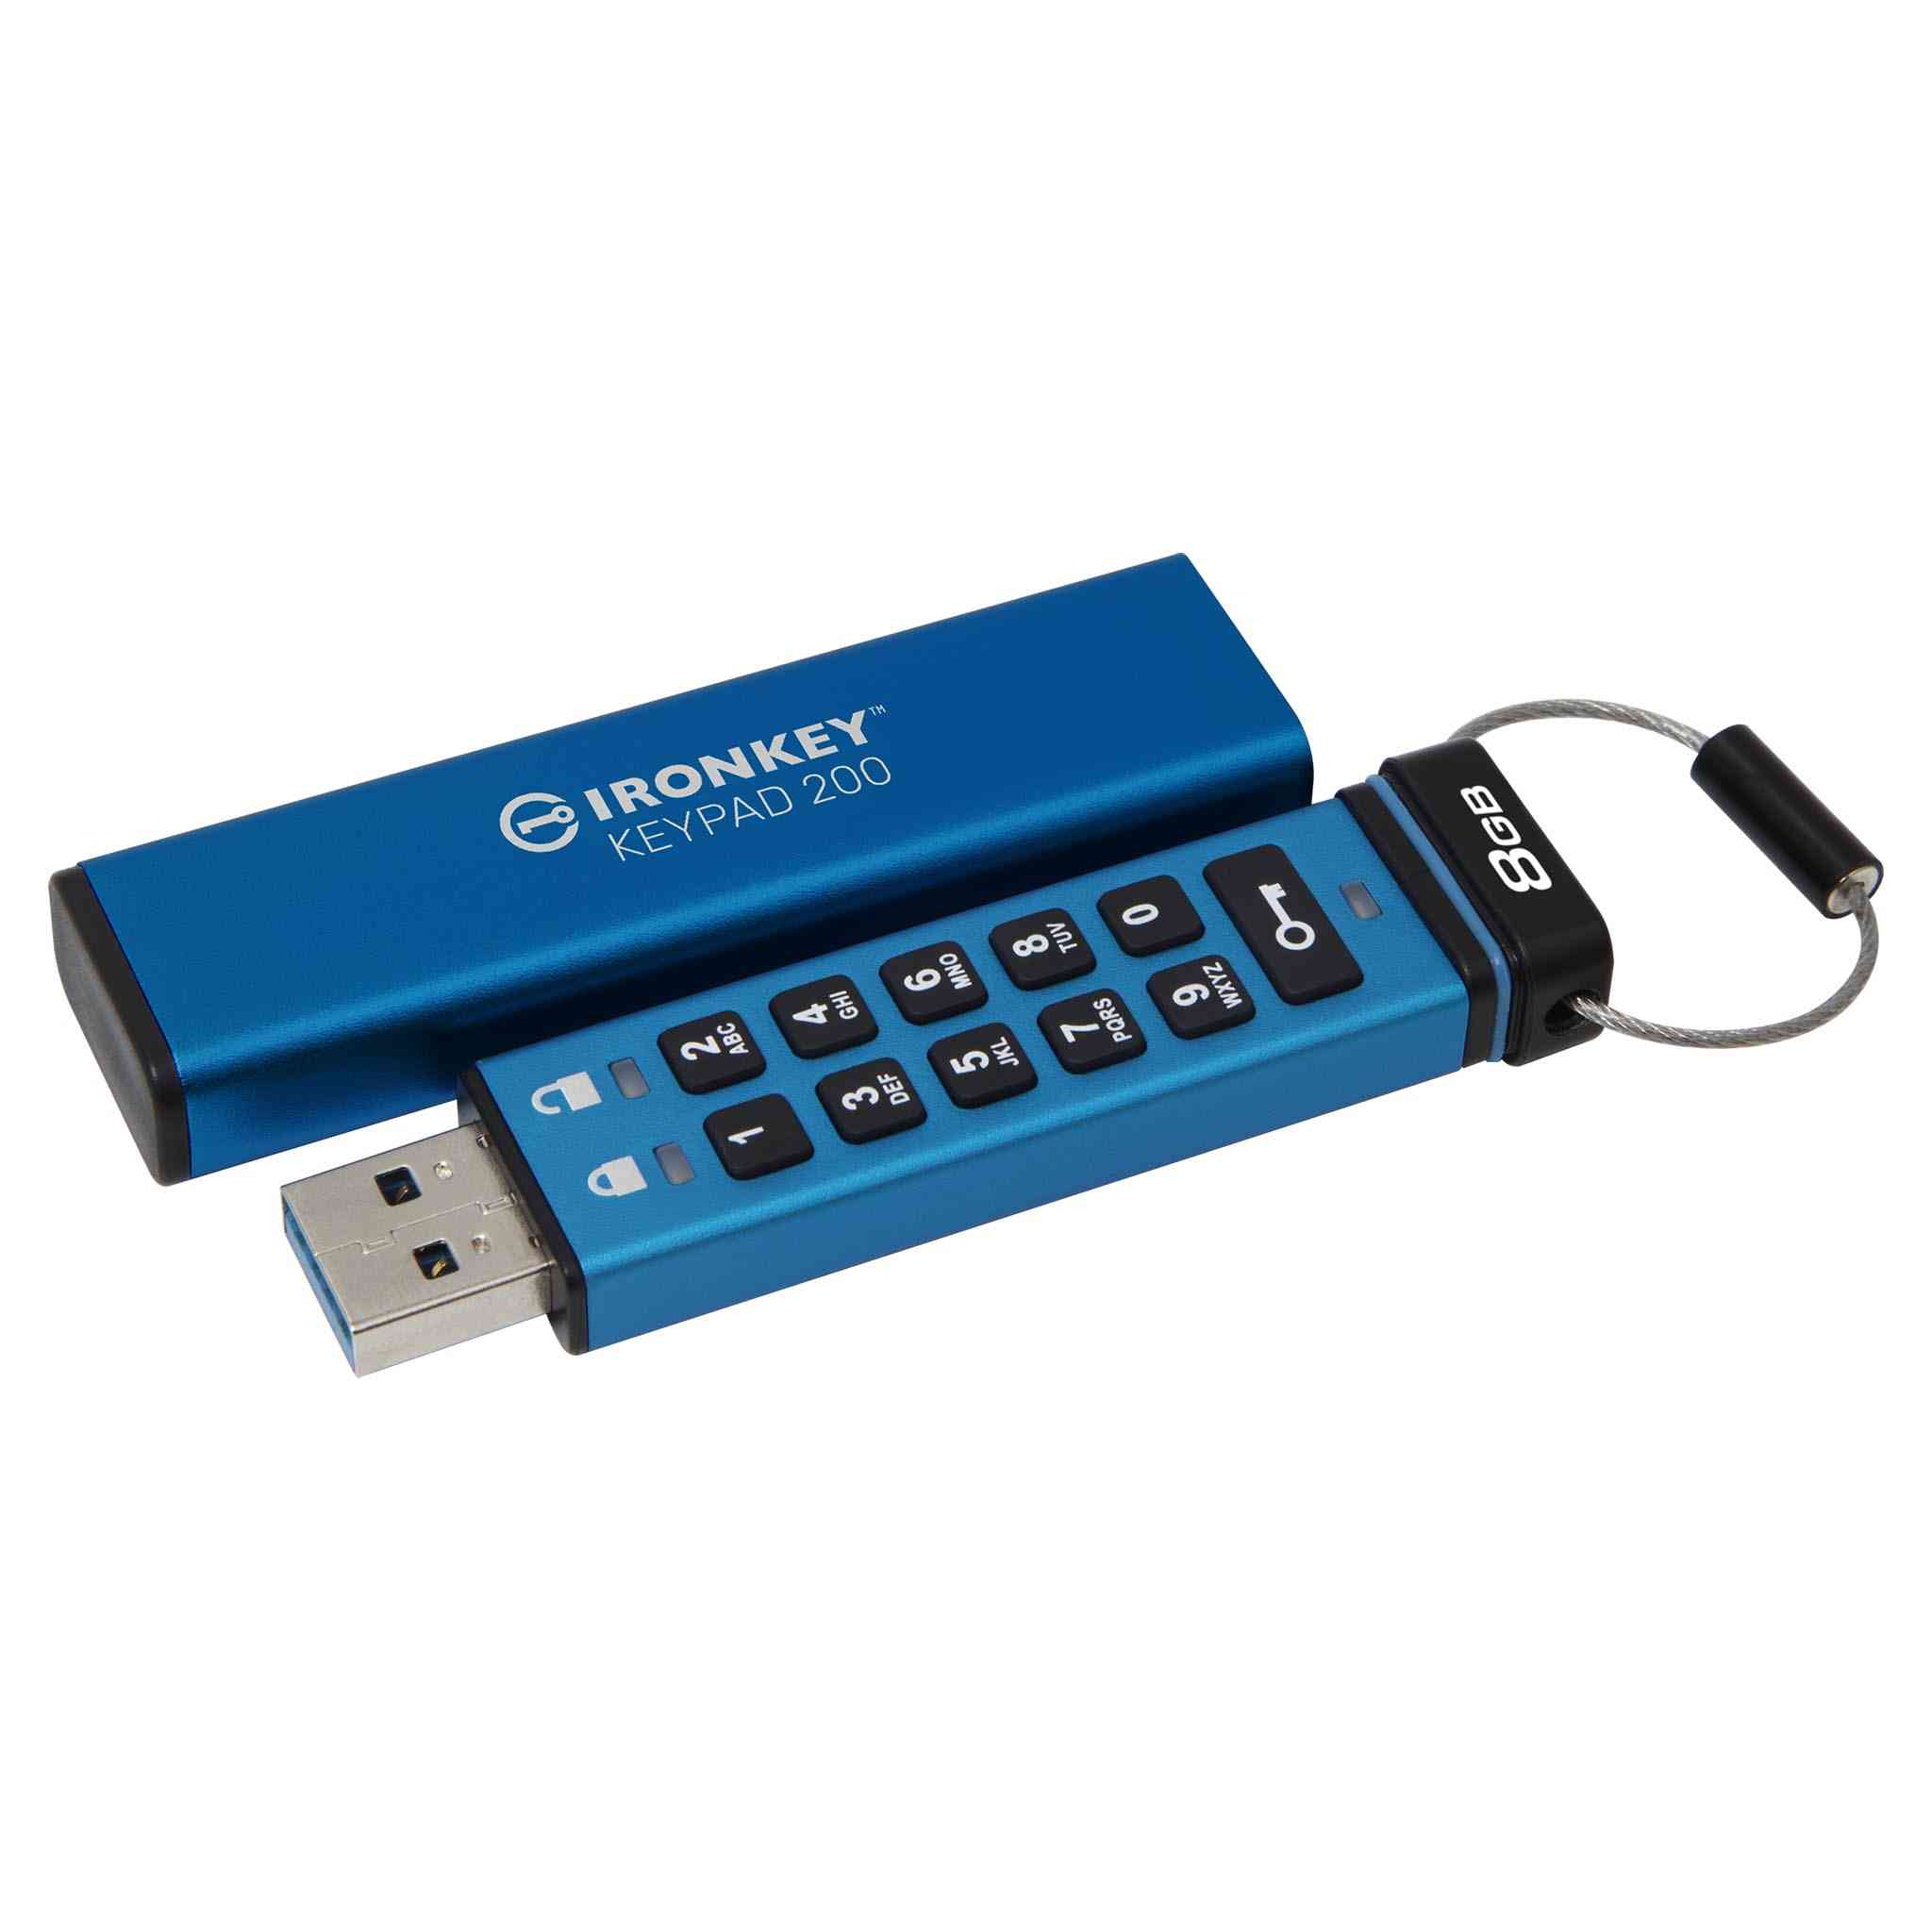 Clé USB 3.0 Corsair Flash Voyager Slider X1 32 Go - Clé USB - Top Achat